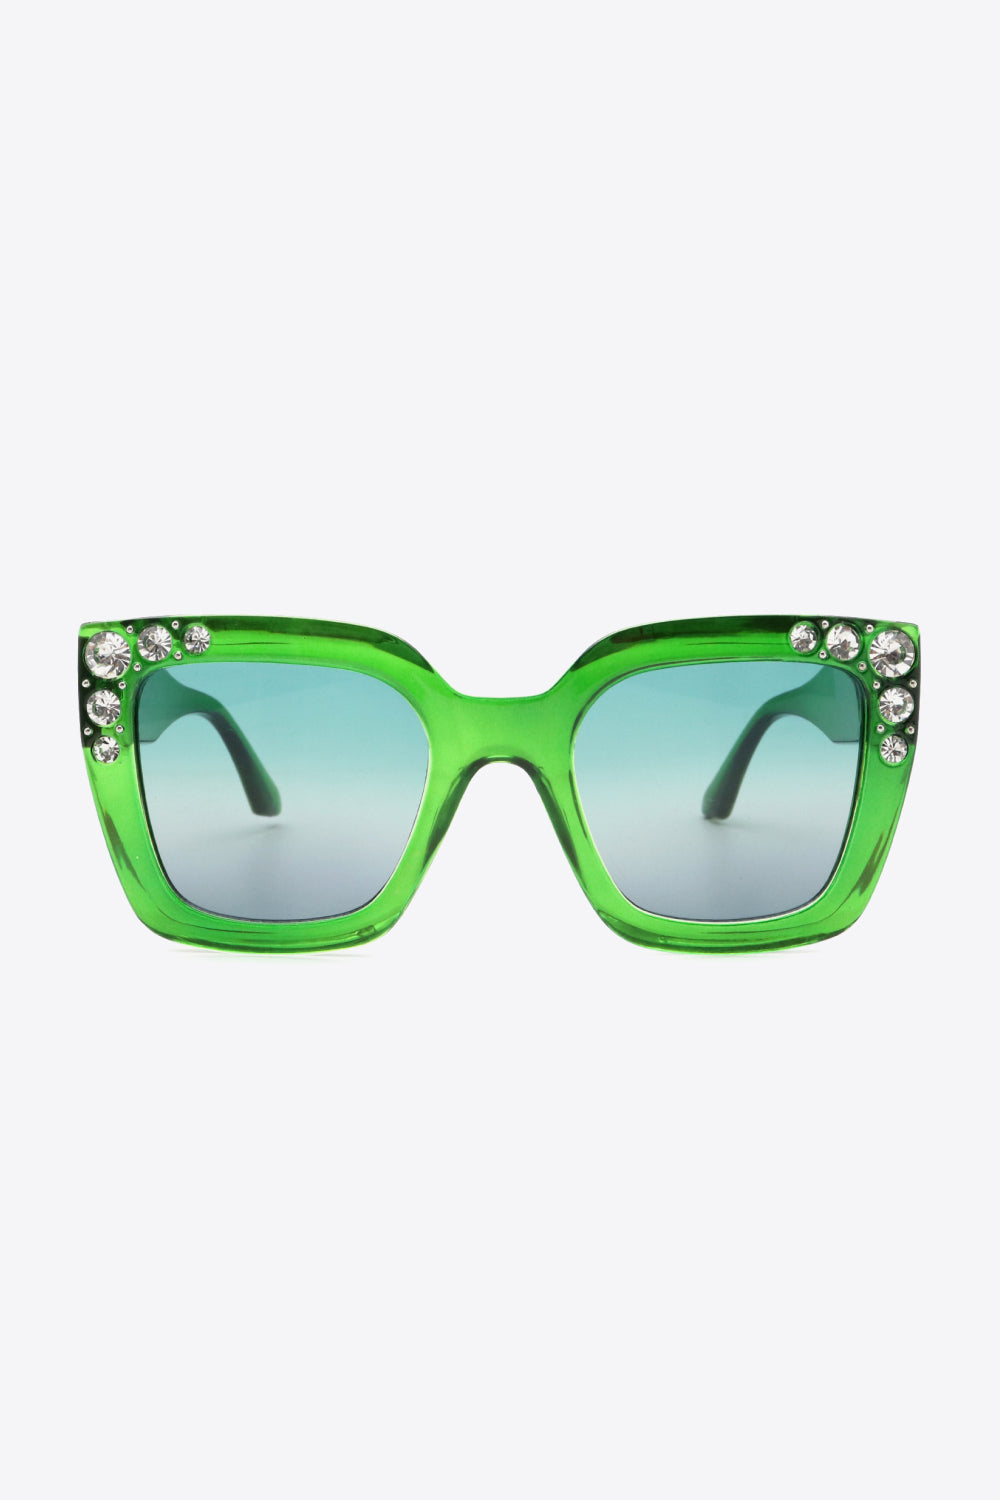 Inlaid Rhinestone Sunglasses